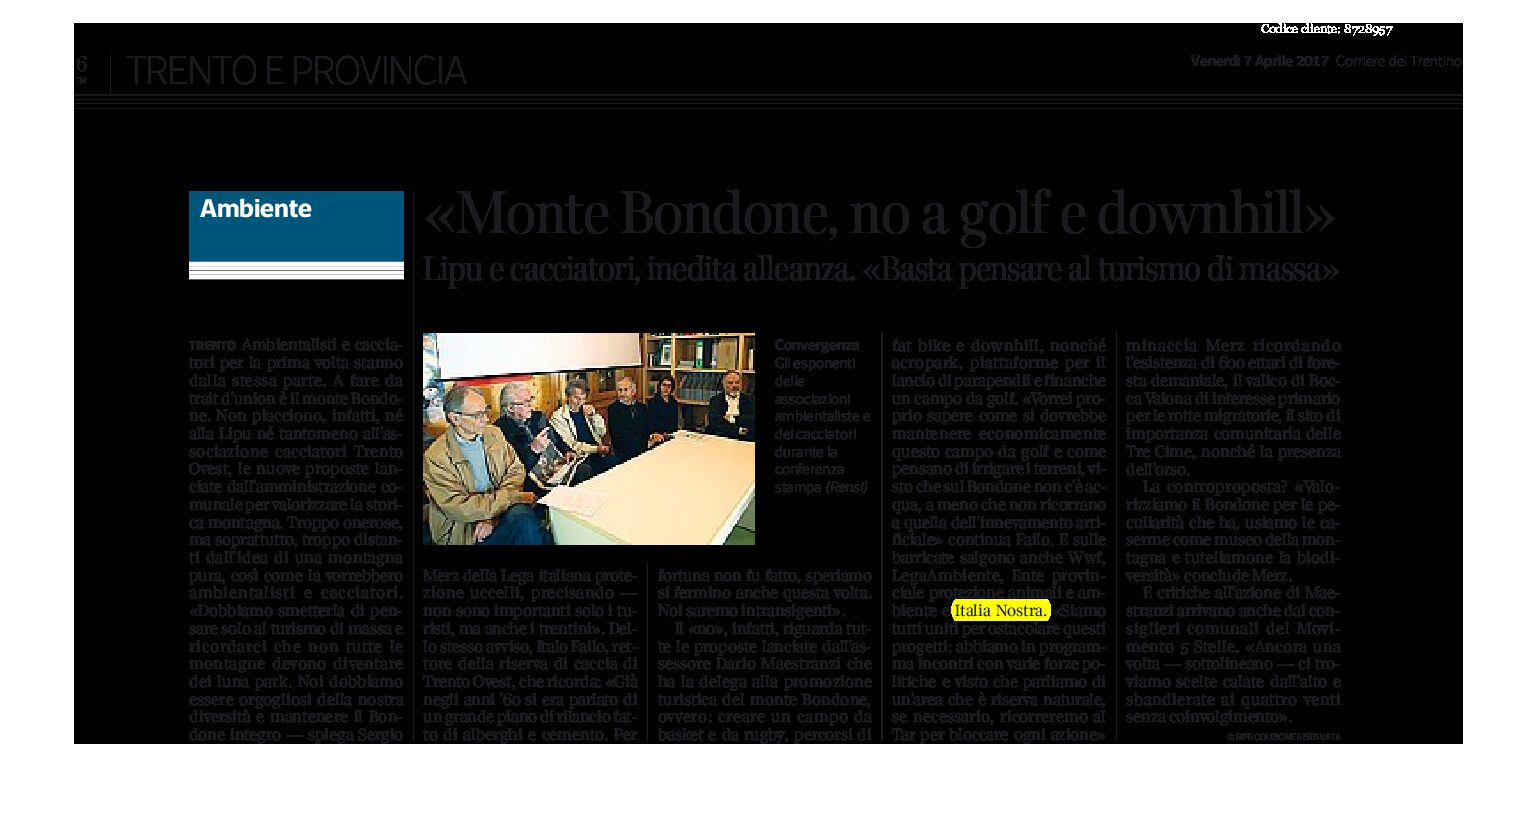 Monte Bondone: no a golf e downhill.